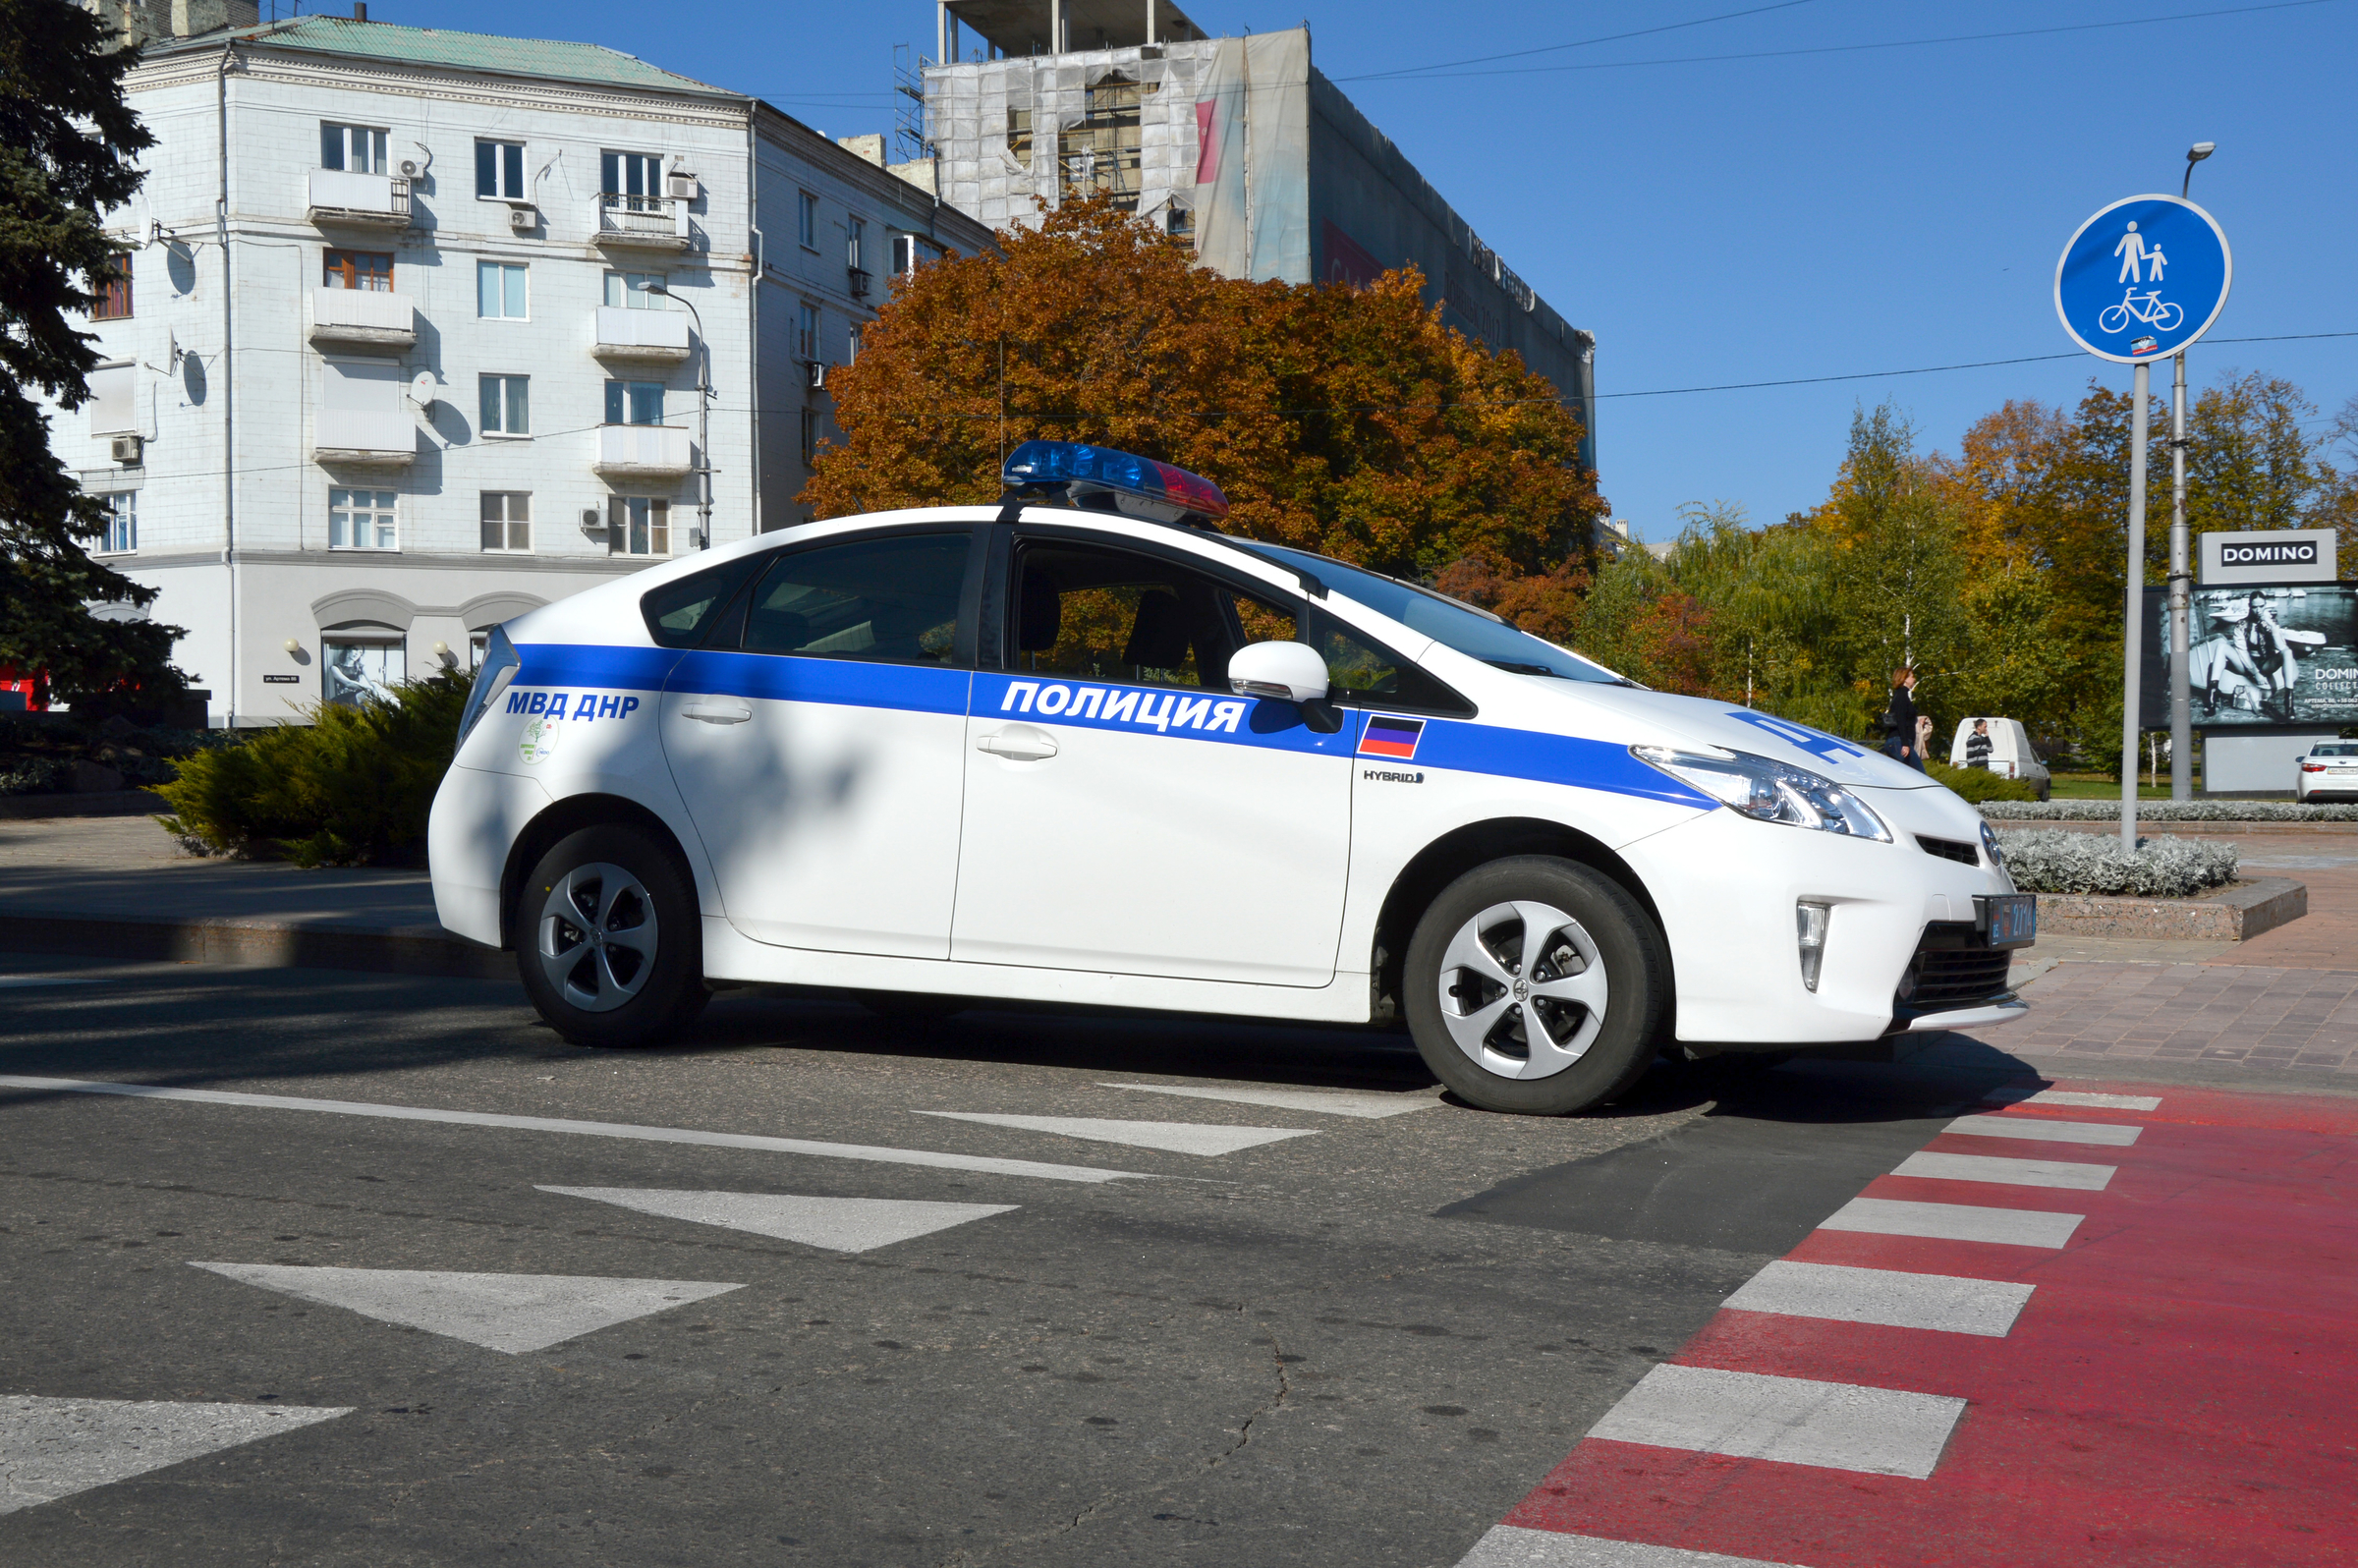 Nagelneue Polizeiautos fahren in Donezk Streife. Woher sie kommen will niemand sagen.